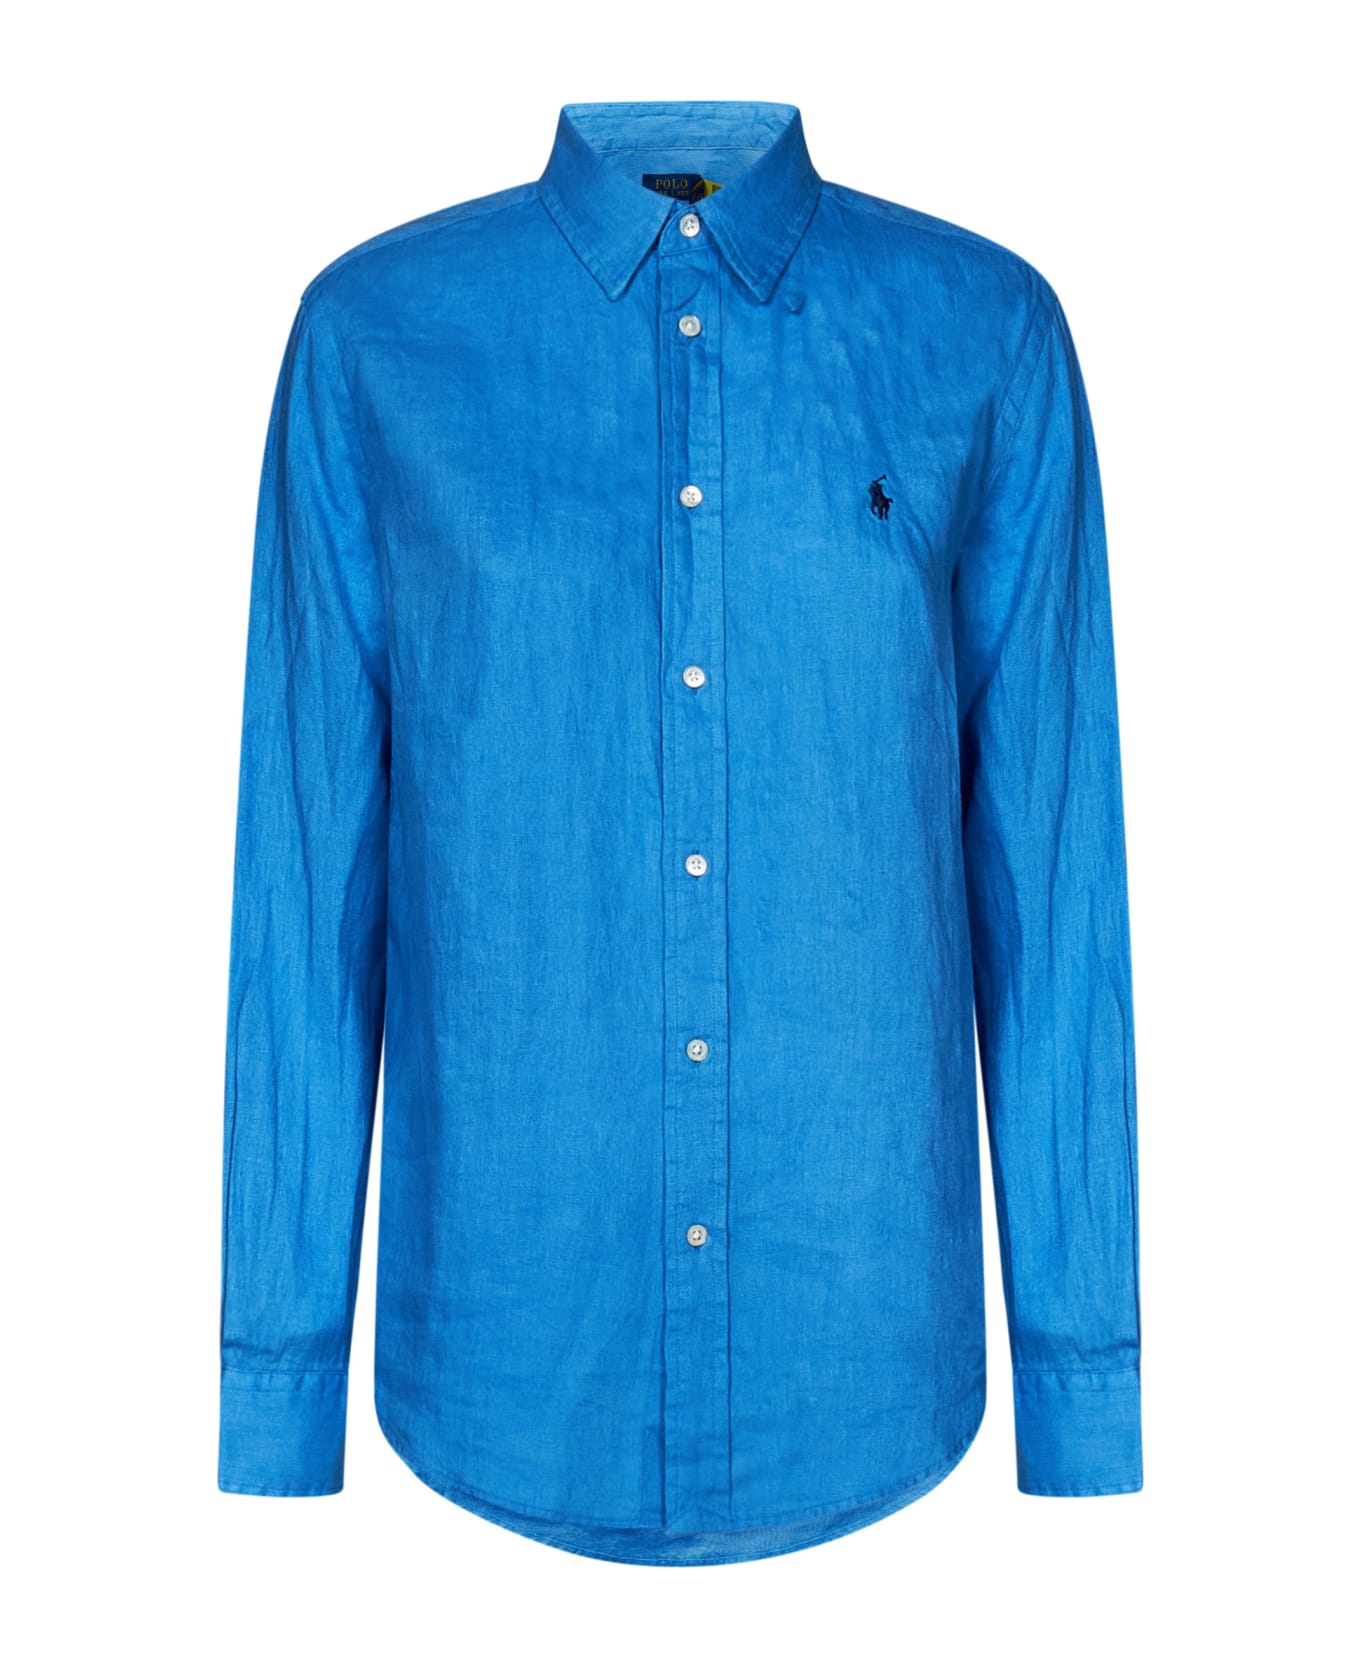 Ralph Lauren Shirt - Riviera Blue